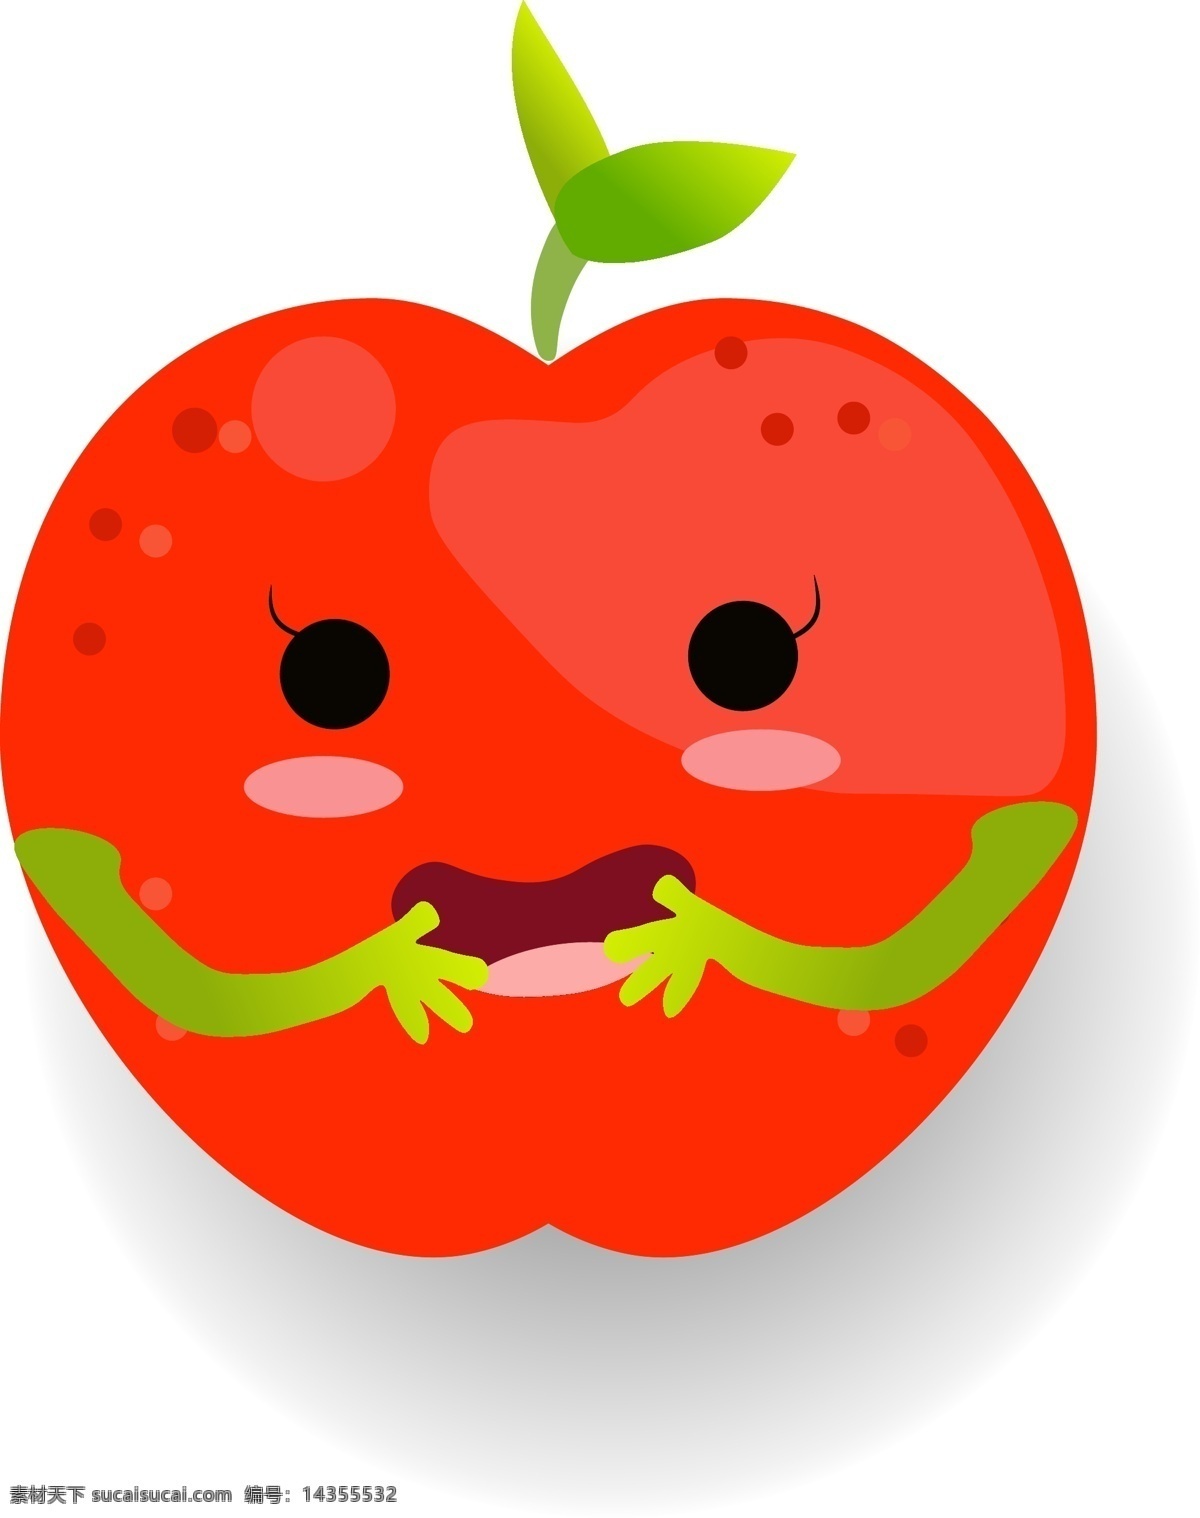 小 清新 可爱 水果 卡通 形象 苹果 小人 矢量 红色 矢量素材 卡通水果 卡通苹果 苹果小人 水果小人 果盒 果盒包装 水果包装 水果素材 苹果素材